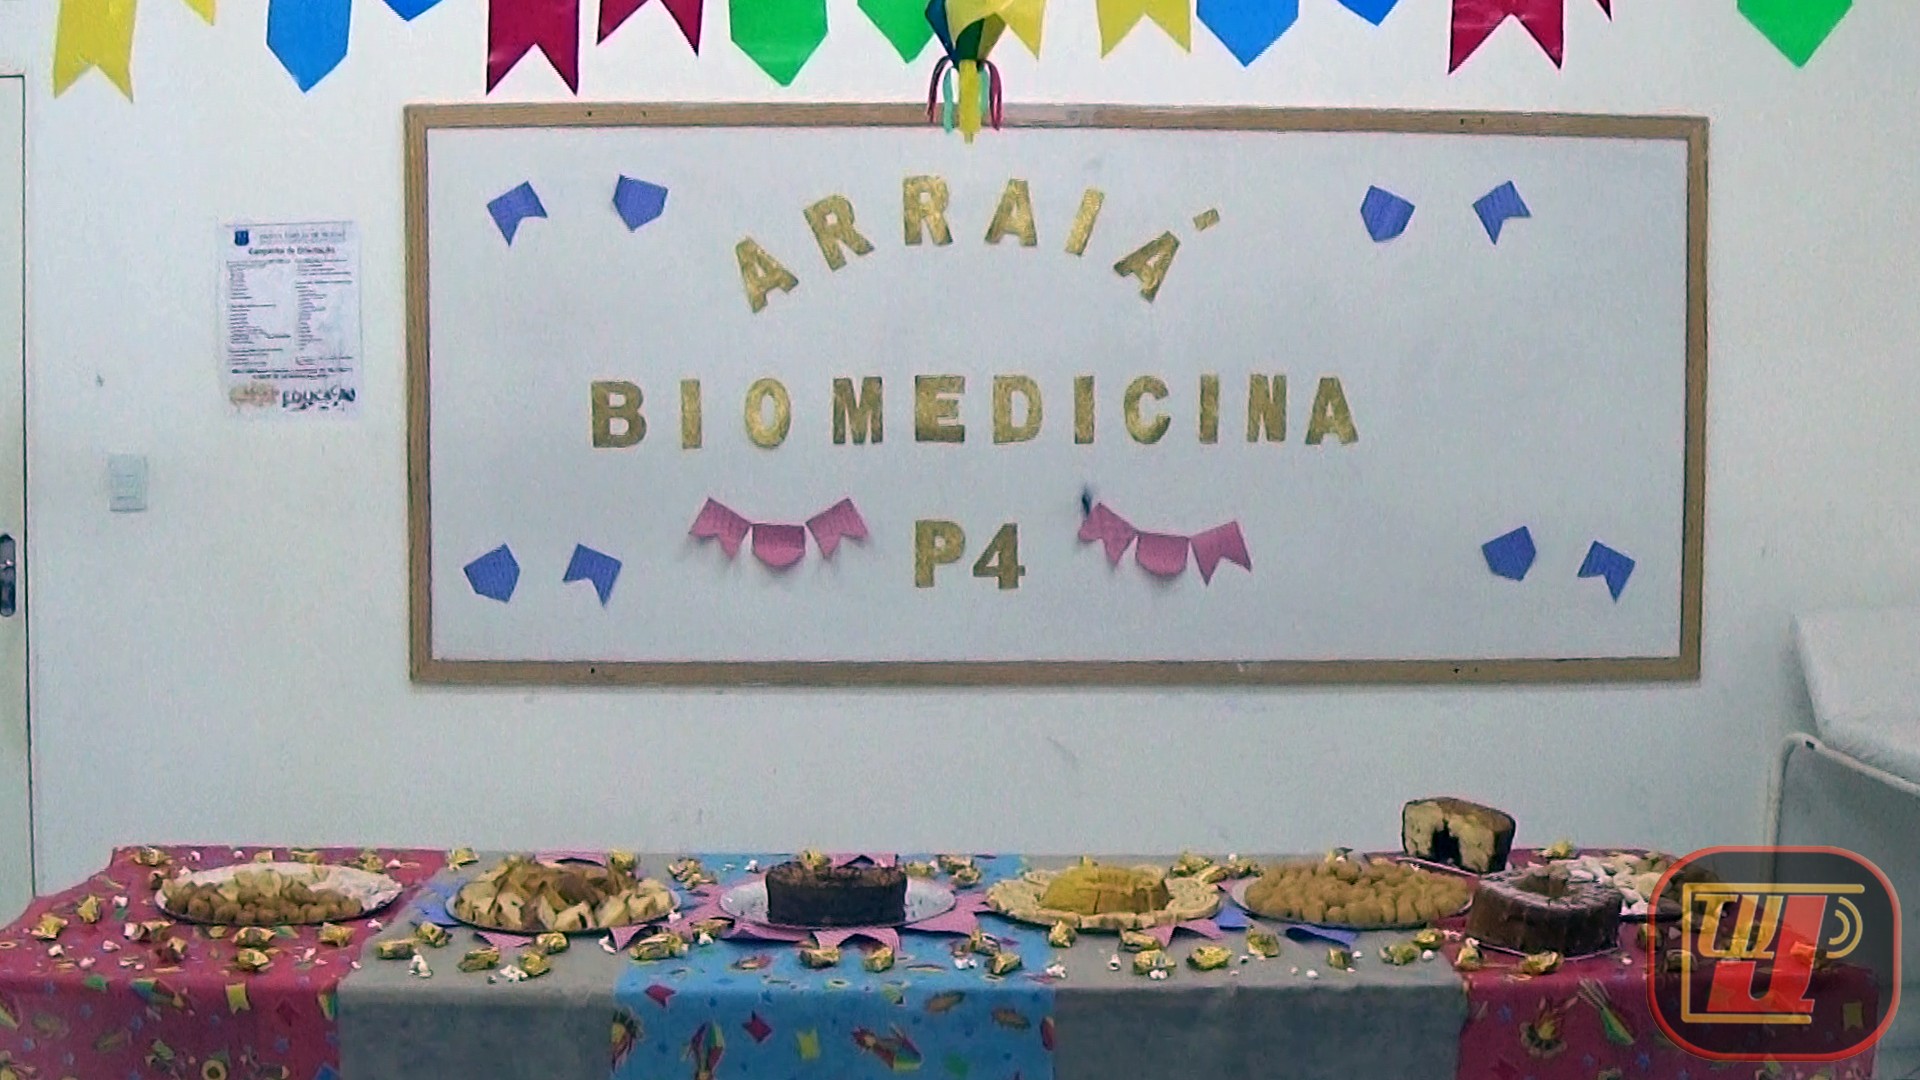 18 06 2019 - Biomedecina P4 (27)